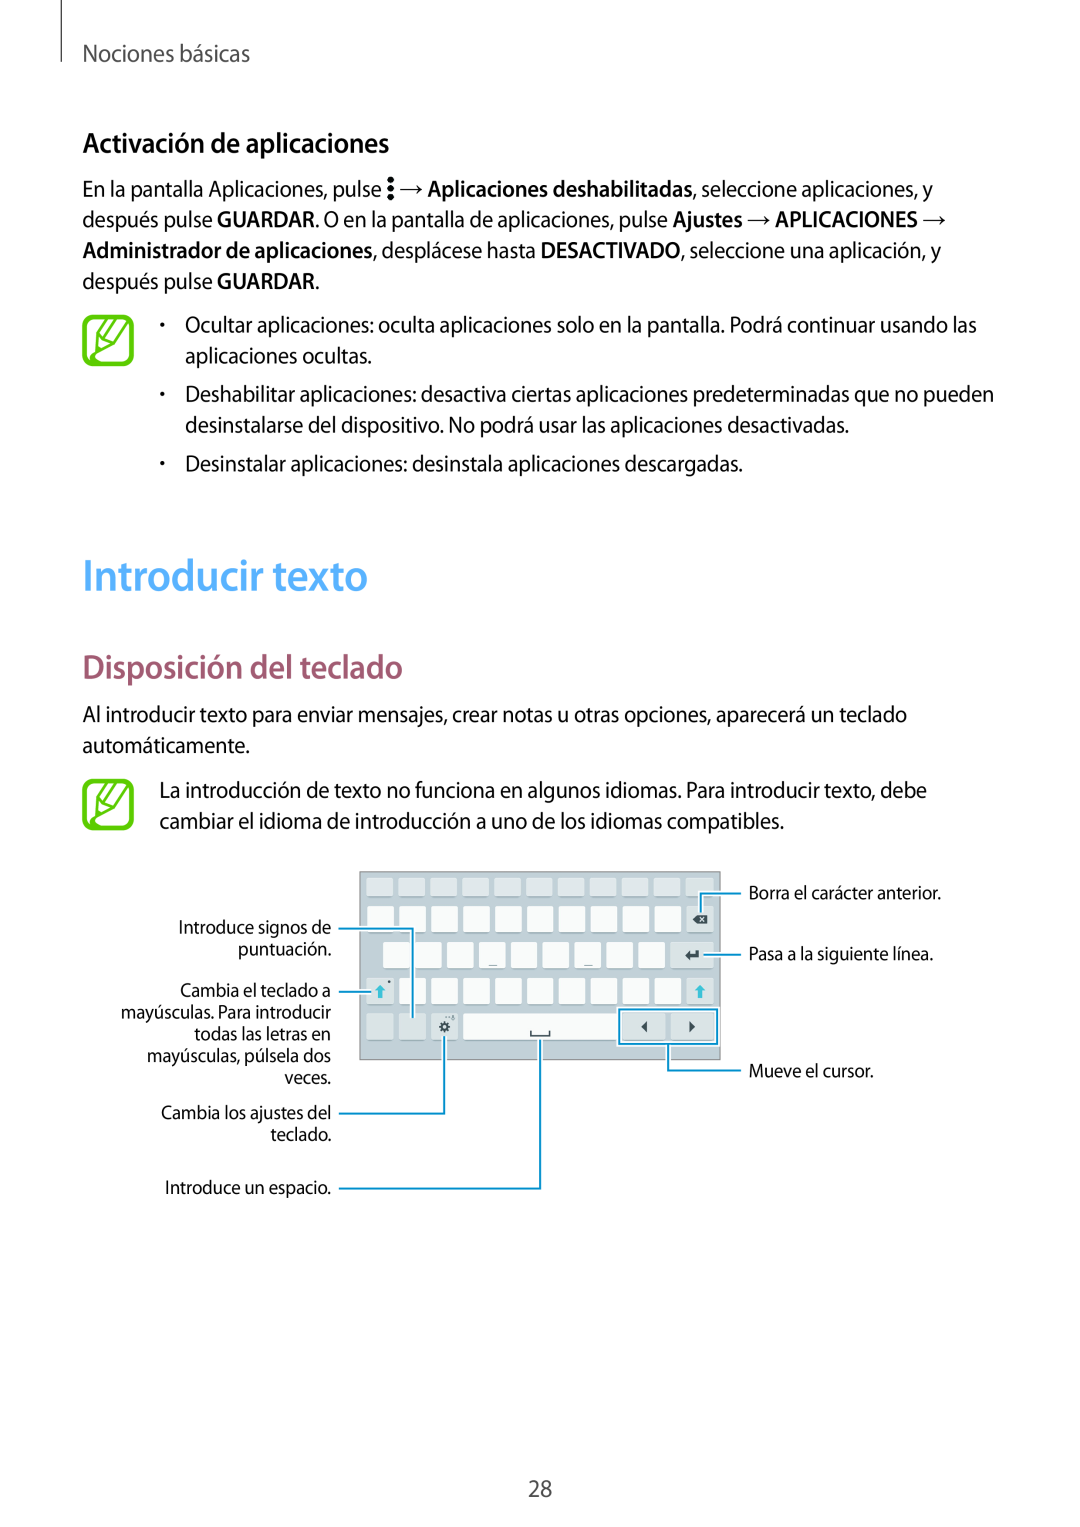 Samsung SM-T700NTSAPHE manual Introducir texto, Disposición del teclado, Activación de aplicaciones, Nociones básicas 